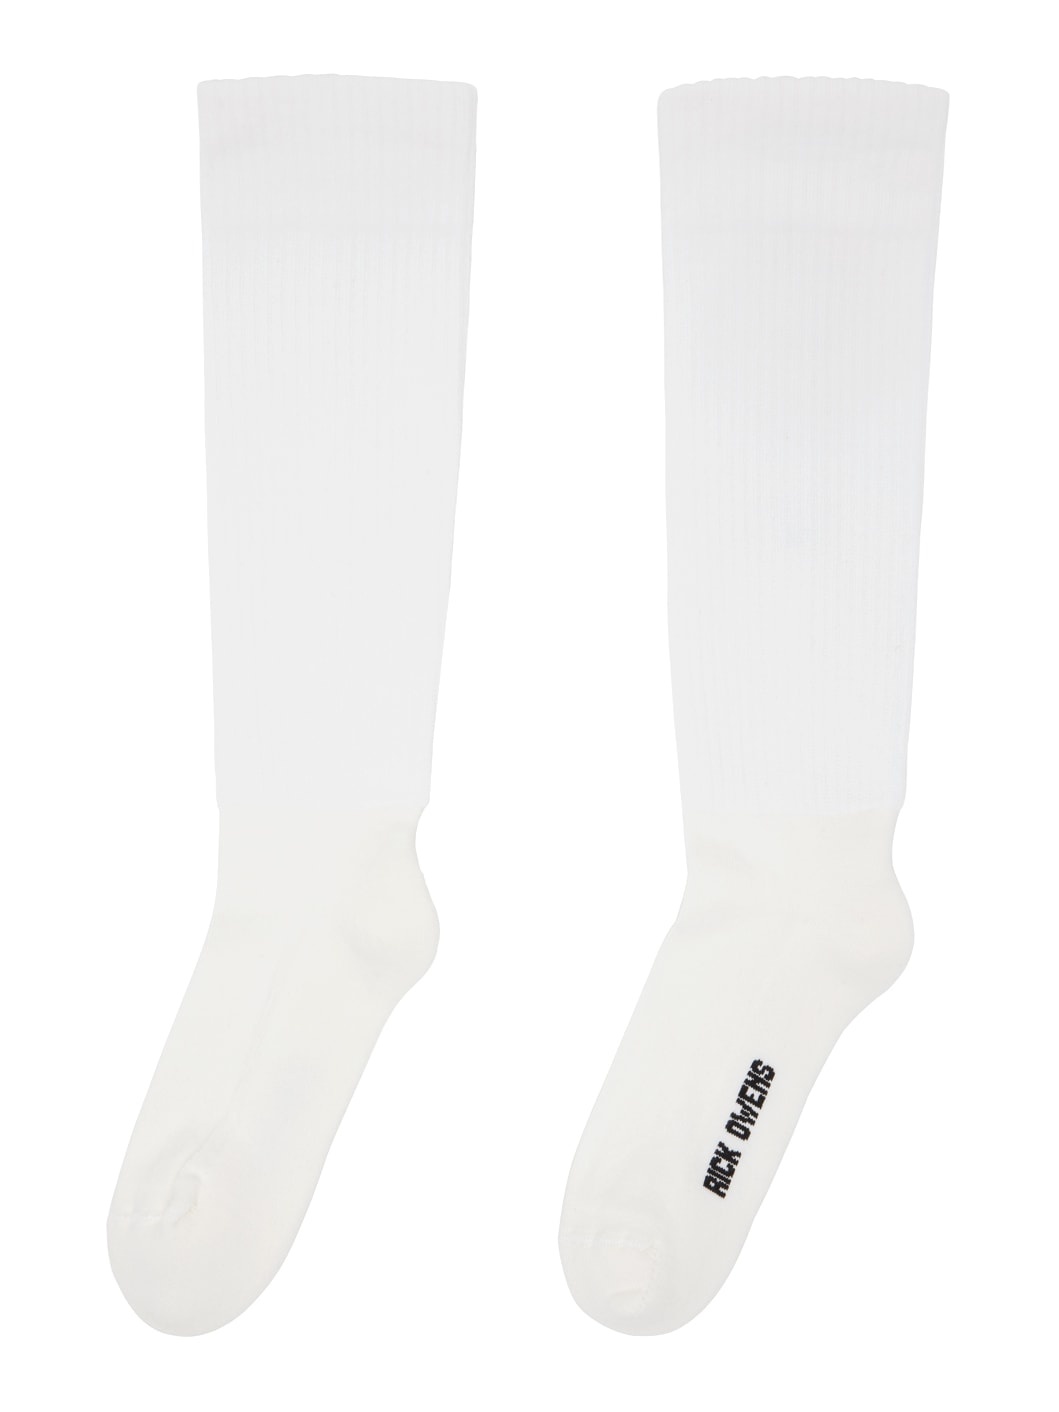 White Knee High Socks - 2